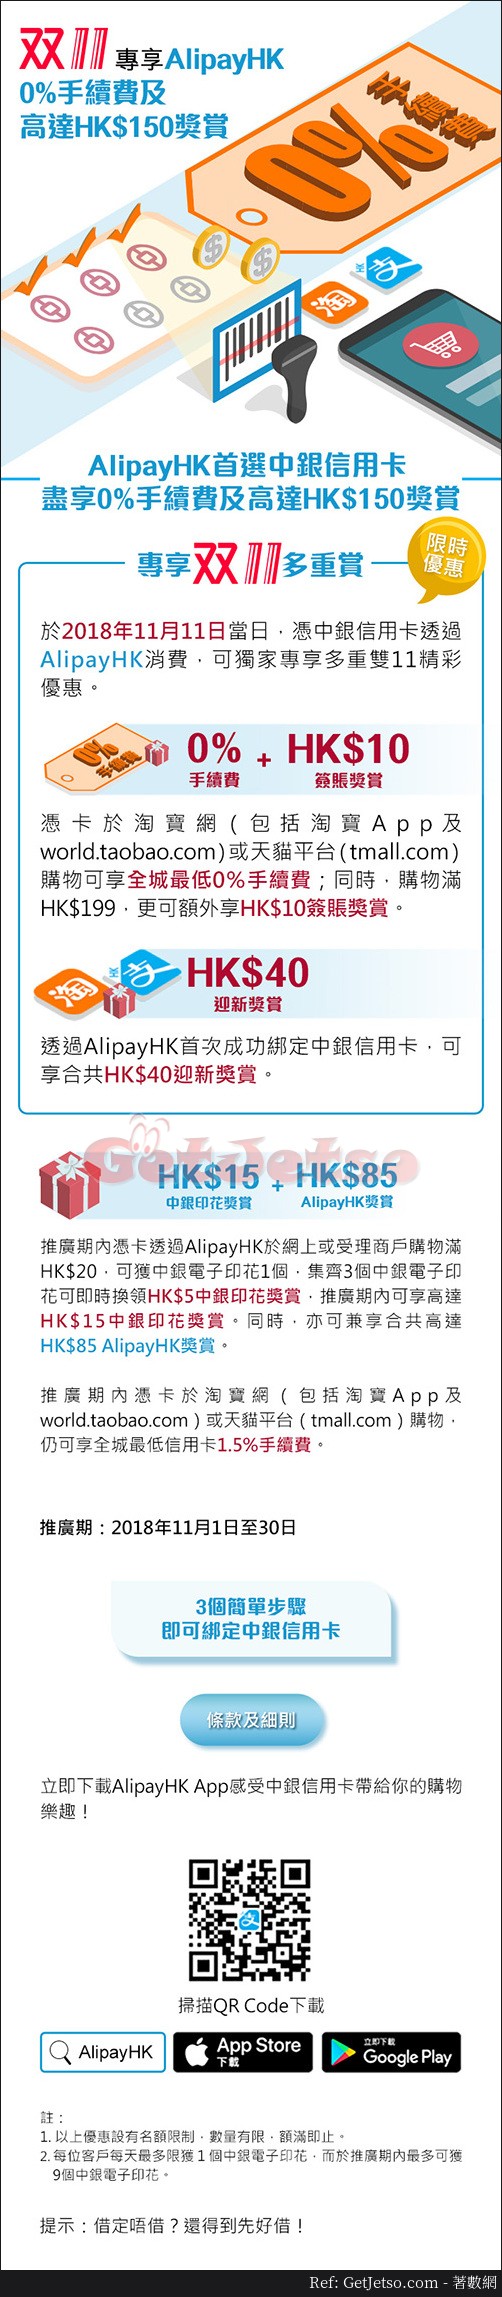 中銀信用卡享AlipayHK 0%手續費及高達0獎賞優惠(至18年11月30日)圖片1